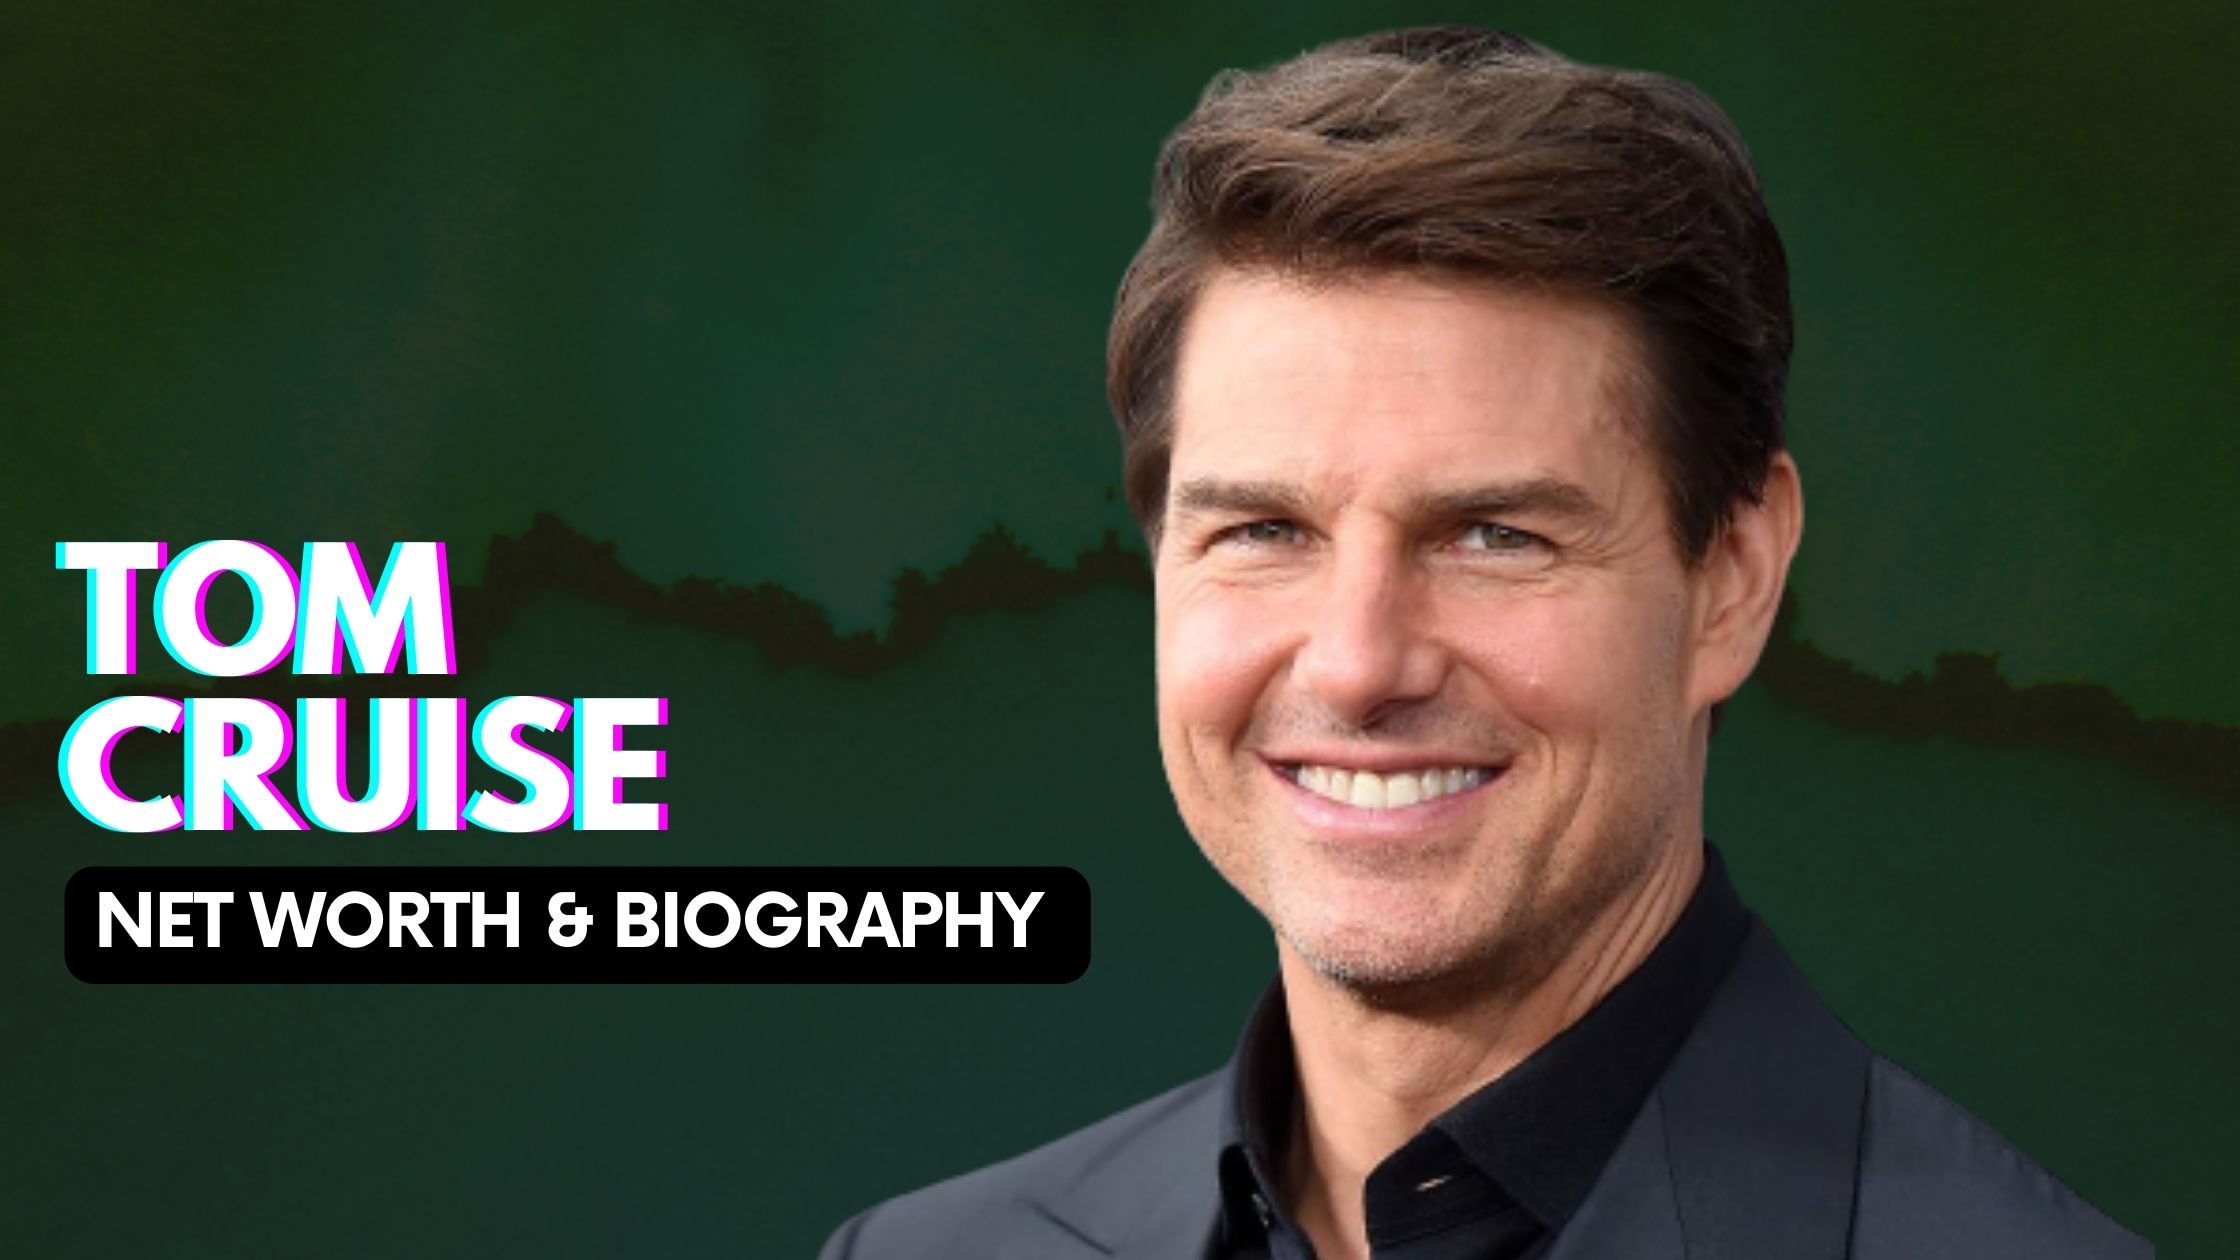 Tom Cruise net worth